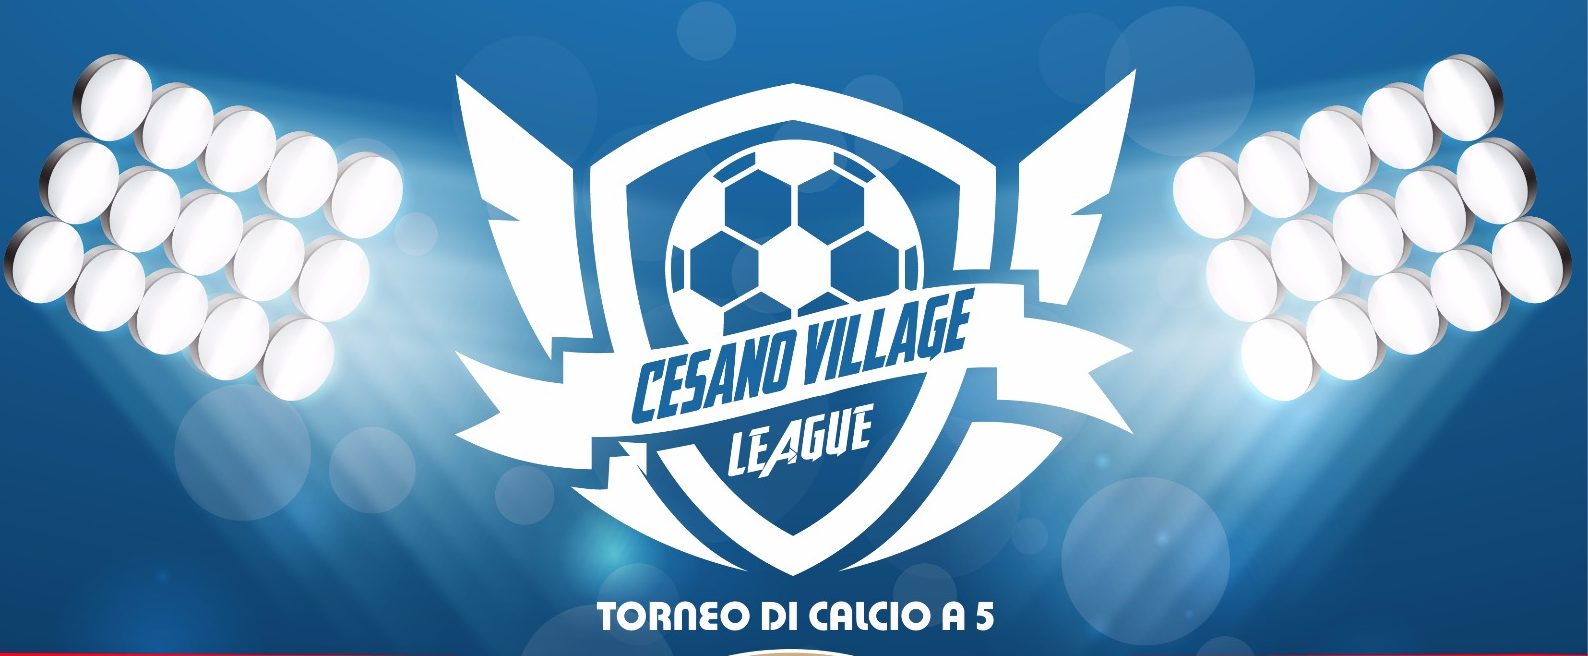 Al momento stai visualizzando Torneo calcio a 5 Cesano Village League